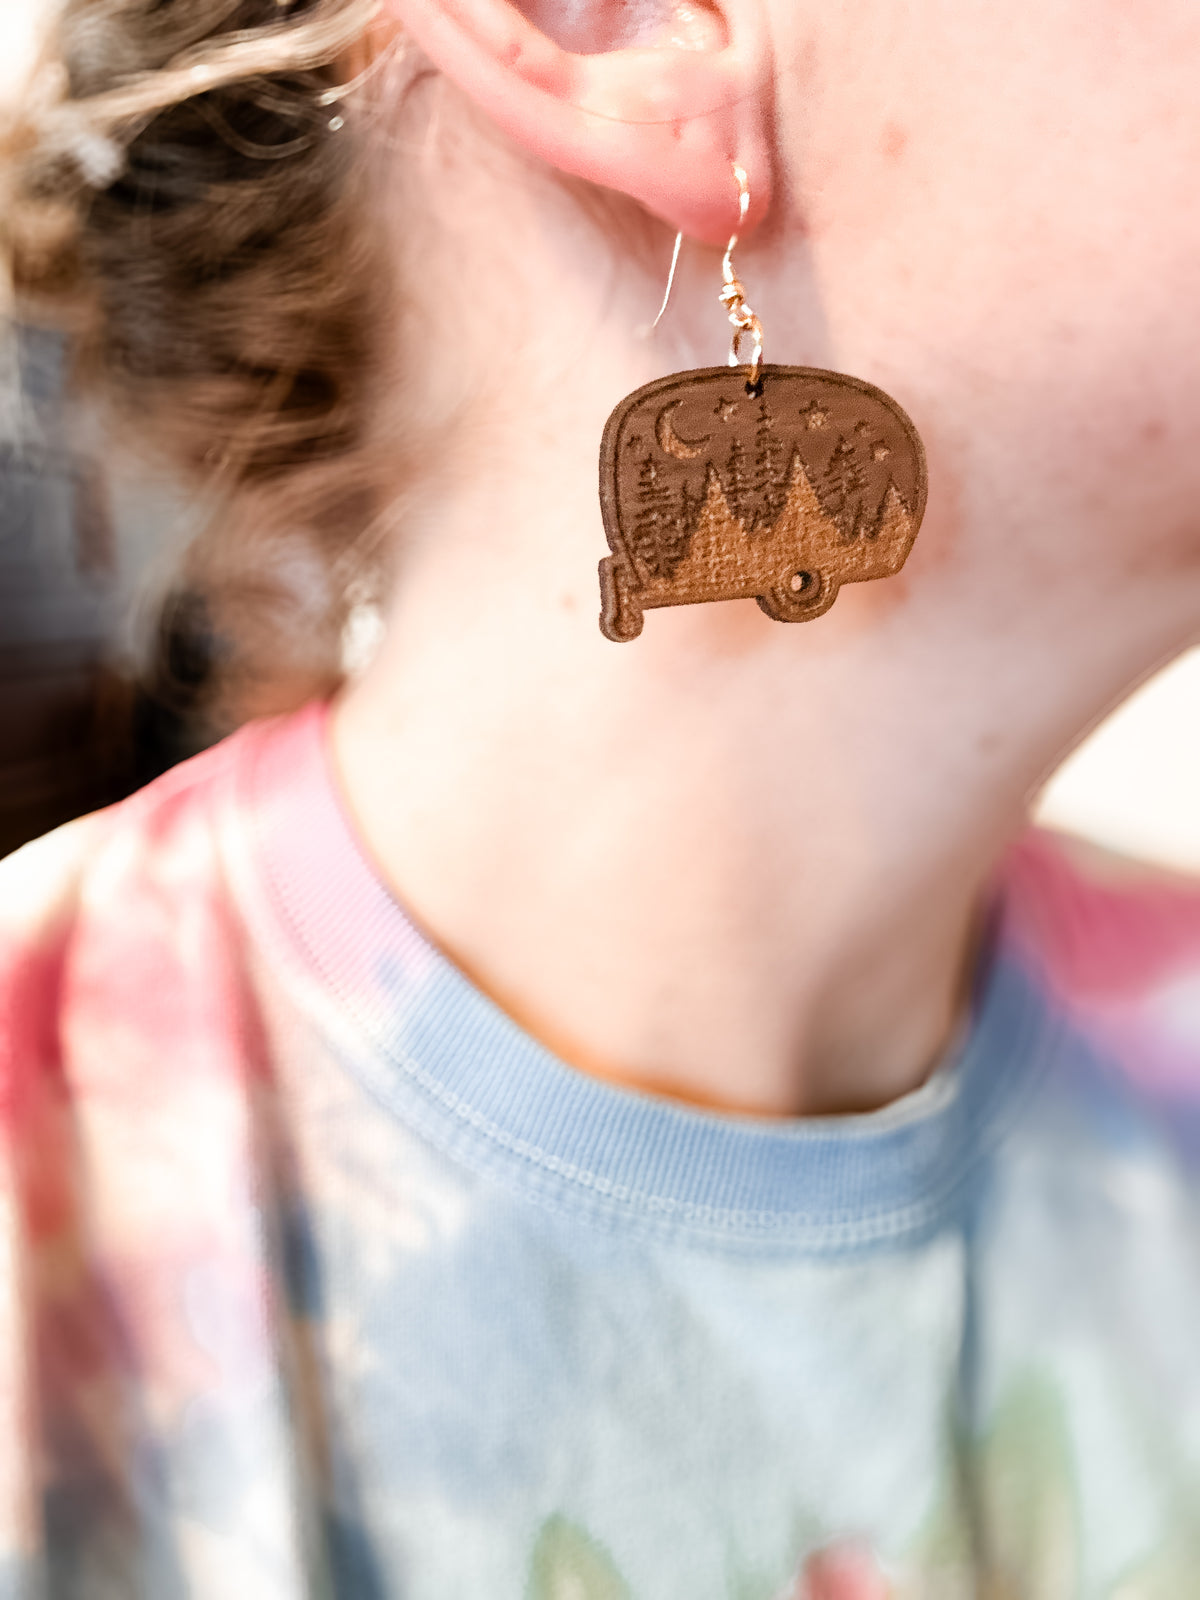 HAPPY CAMPER earrings - walnut wood earrings